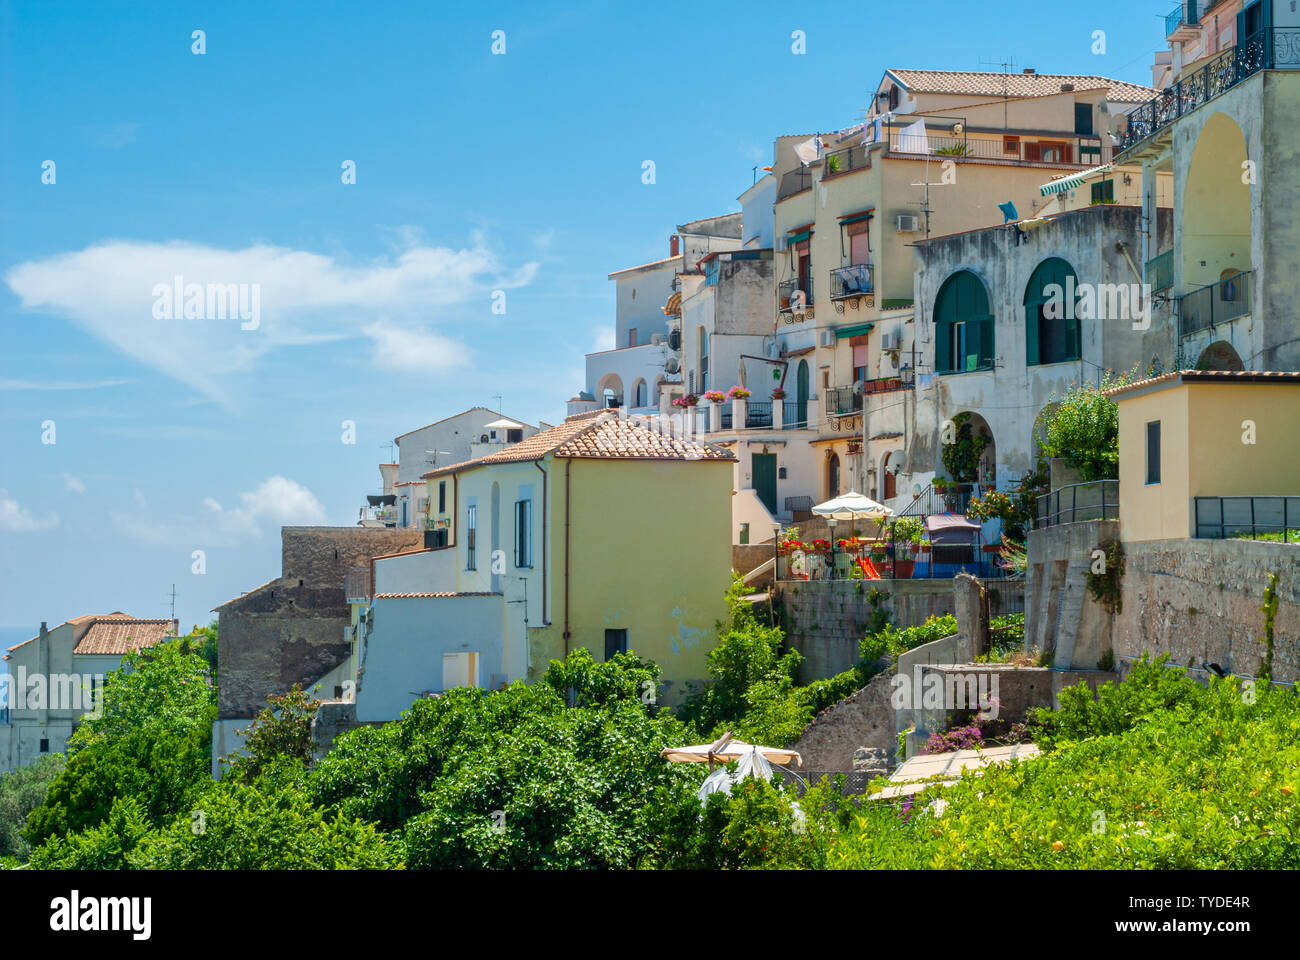 Scorcio di case arroccato su una collina, con cielo blu come sfondo, presi nella stagione estiva Foto Stock